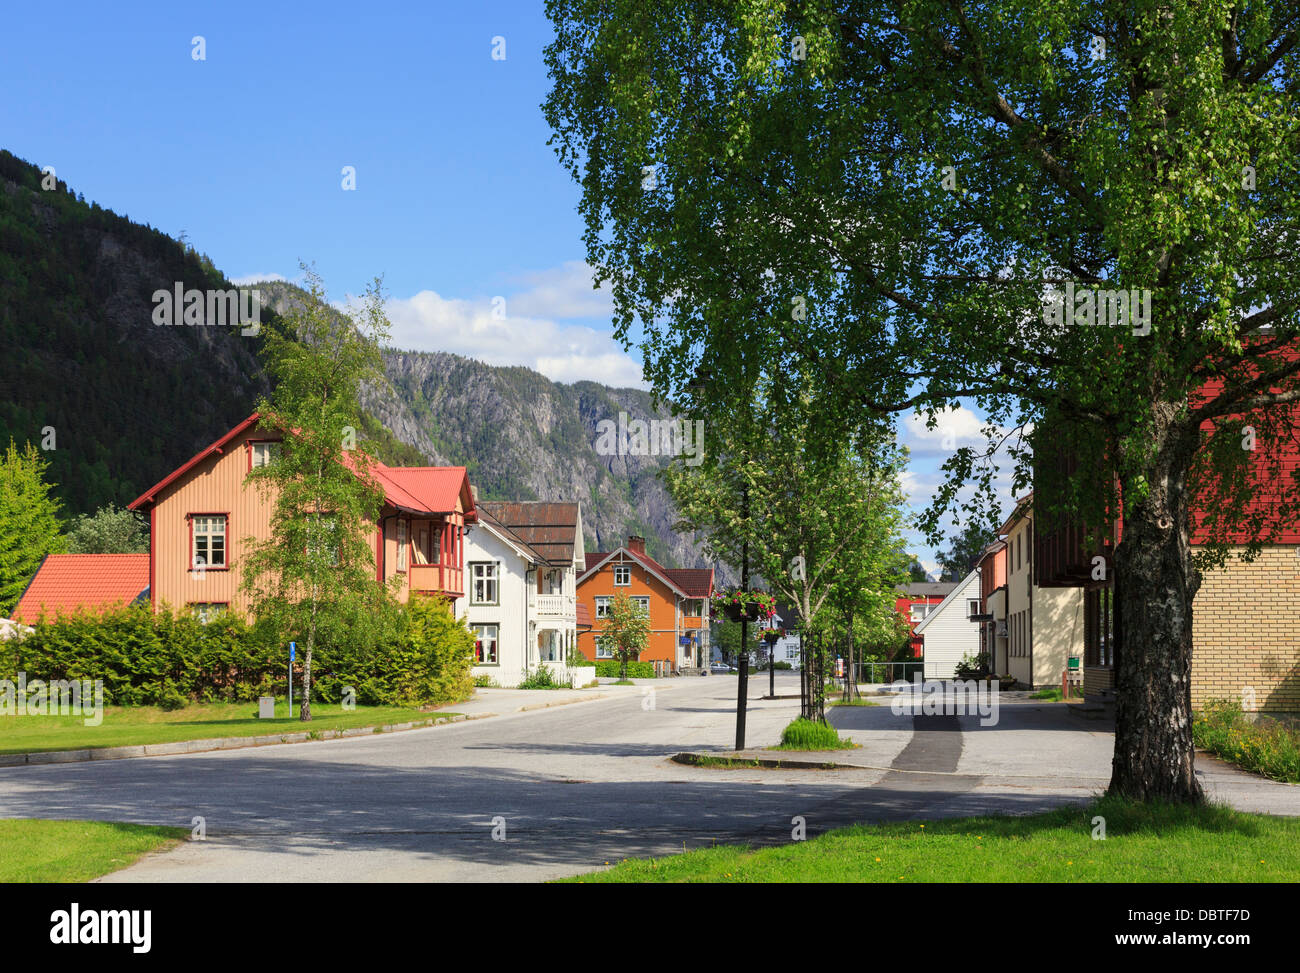 Maisons en bois norvégien typique calme le long de la rue principale dans le village de Dalen, Telemark, Norvège, Scandinavie Banque D'Images